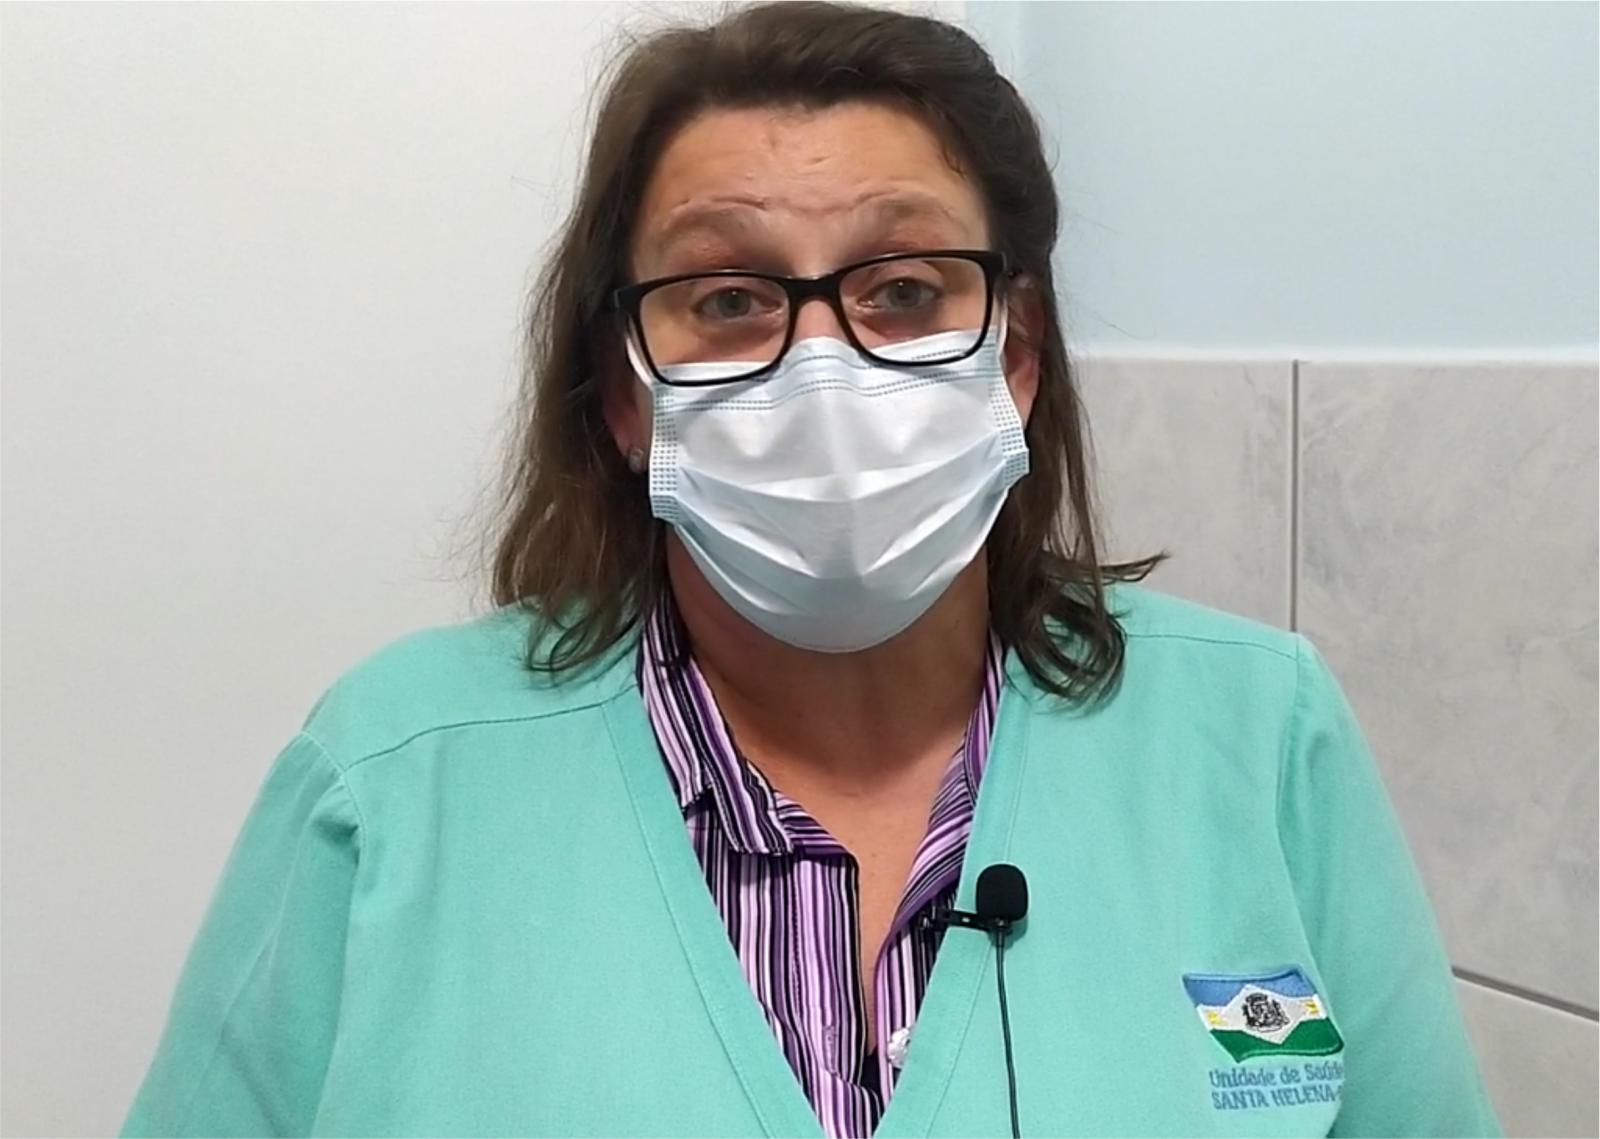 Enfermeira alerta sobre cuidados com doenças respiratórias nessa época do ano